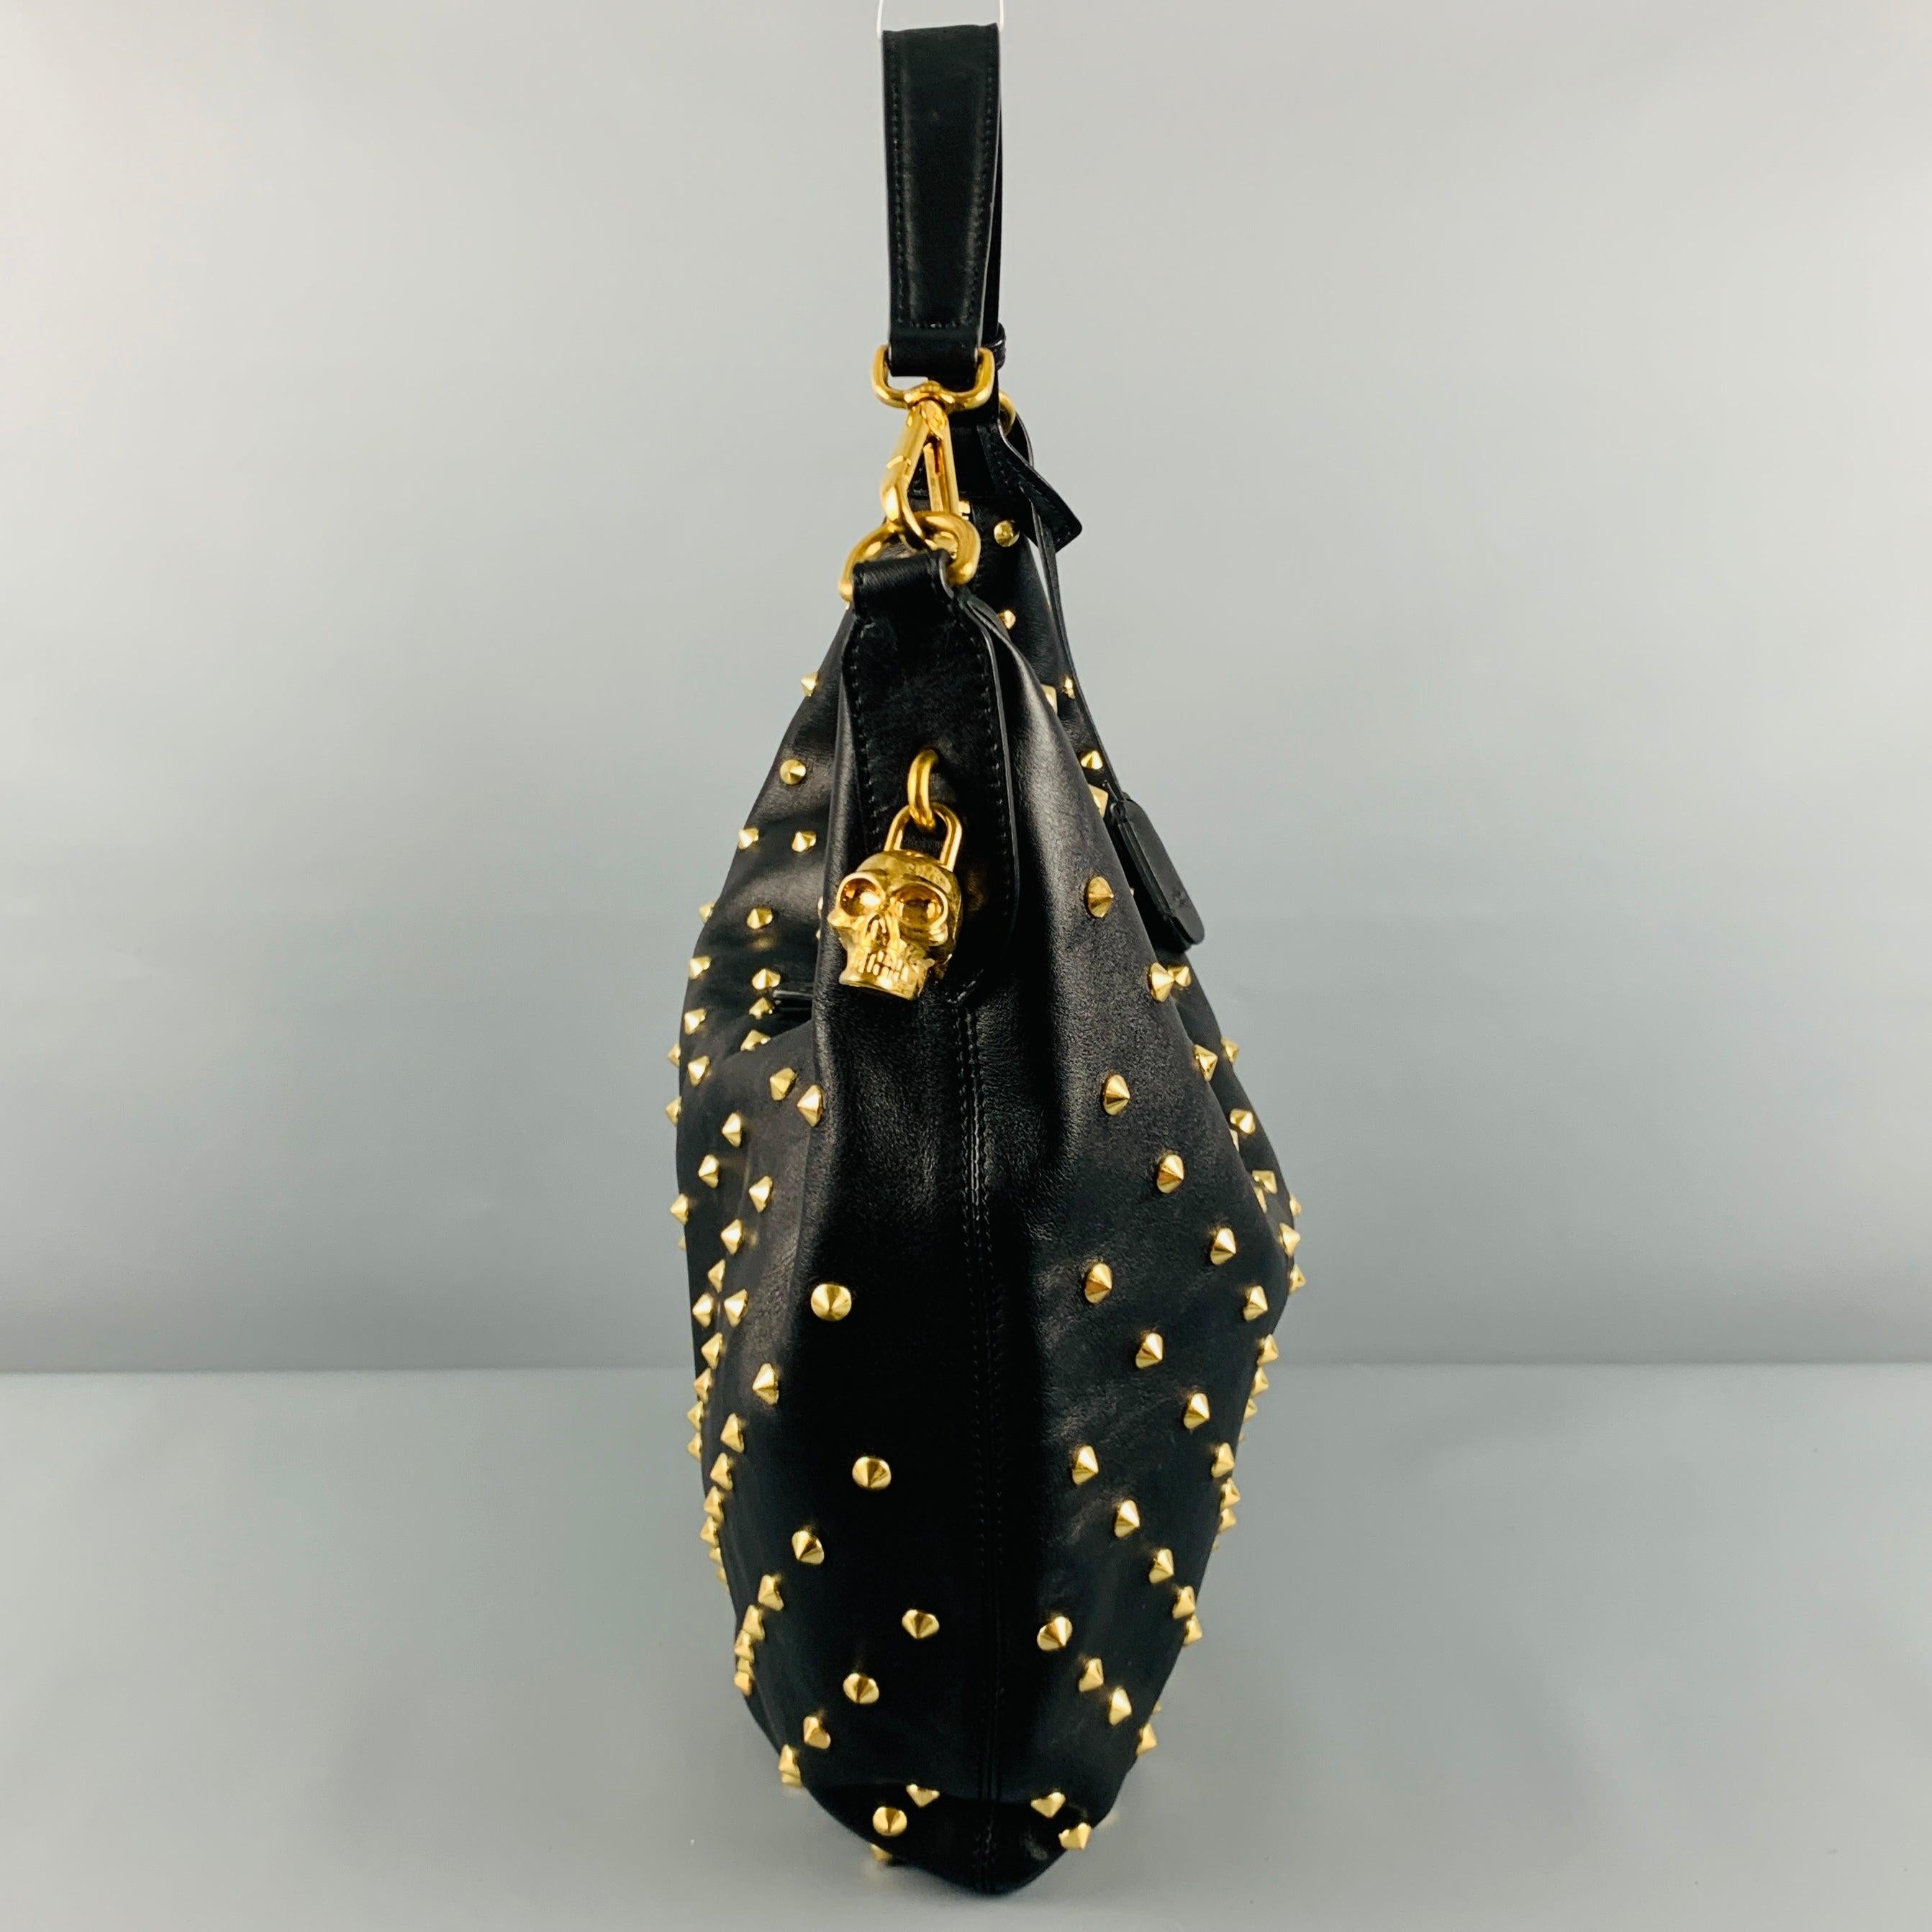 ALEXANDER MCQUEEN Handtasche
aus schwarzem Leder im Hobo-Stil, mit goldfarbenen Nieten und doppeltem Reißverschluss mit Totenkopf-Vorhängeschloss und Schlüsseln. Sehr guter, gebrauchter Zustand. 

Abmessungen: 
  Länge: 17,5 Zoll Breite: 1,5 Zoll